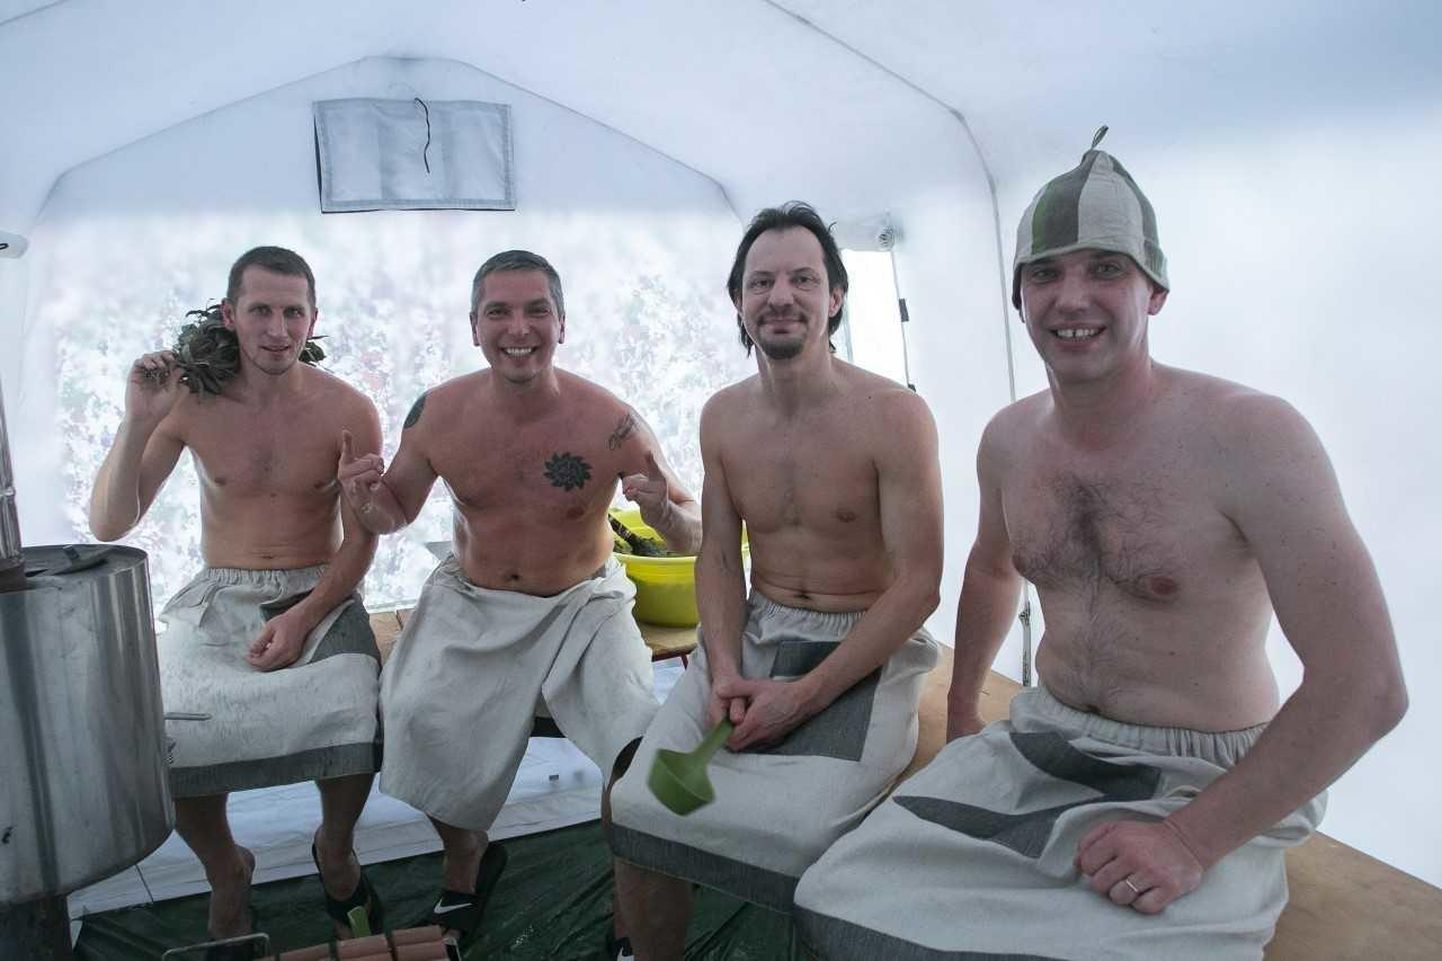 Pakaselisel aastavahetusel Rakveres Parkali tänaval toimunud saunafestivali eelsoojendus-peaproov. Vasakult Kristo Saage, Marko Torm, Indrek Saar, Gunnar Kotiesen.